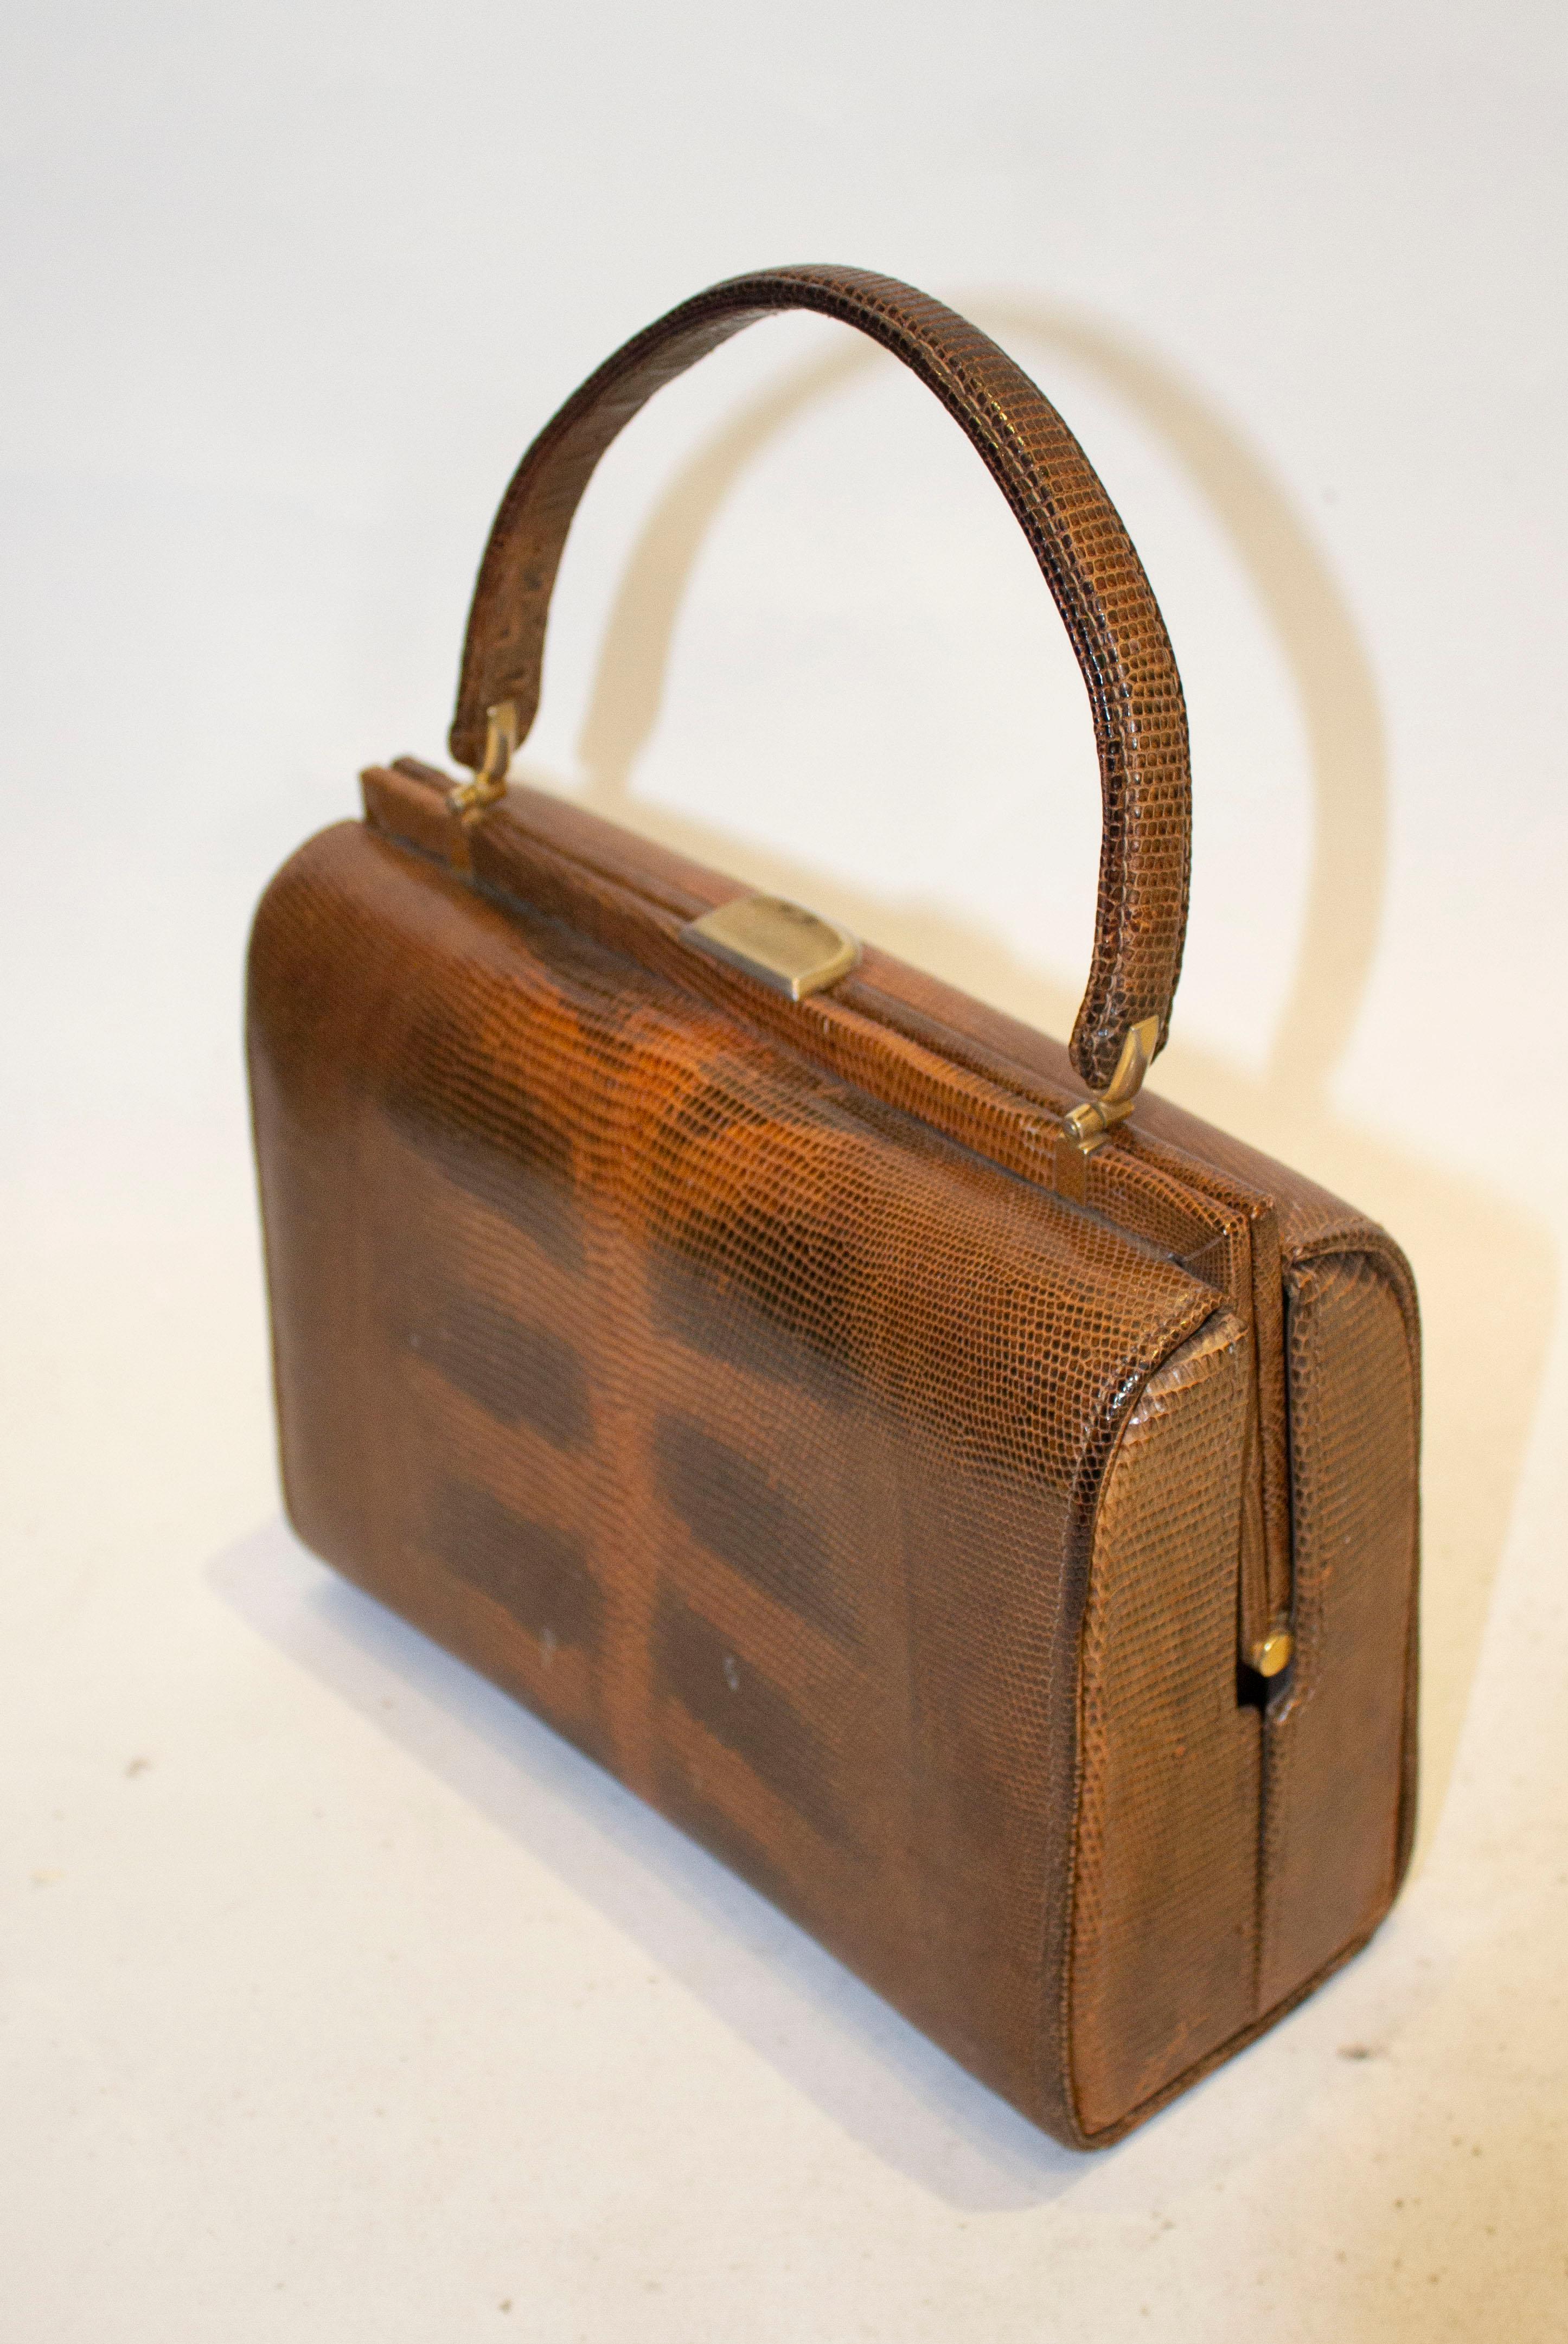 Eine alte braune Handtasche mit Lizzardgriff.  Die Tasche ist mit Wildleder gefüttert und hat ein Reißverschlussfach,  eine Beuteltasche und eine Papptasche. 
Maße: Länge 9''.Breite 4'' Höhe ''